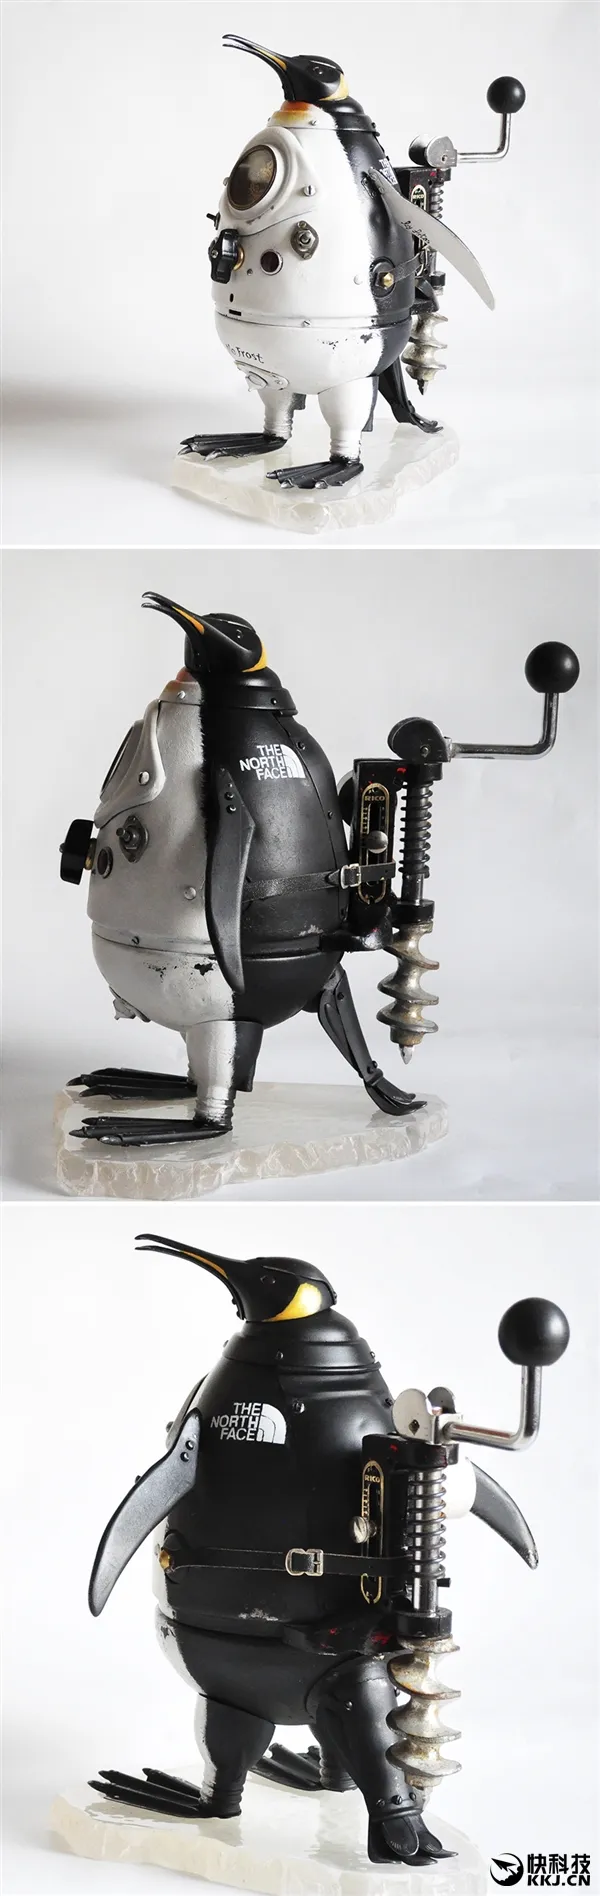 艺术家用废铁打造“机械兽”：活灵活现